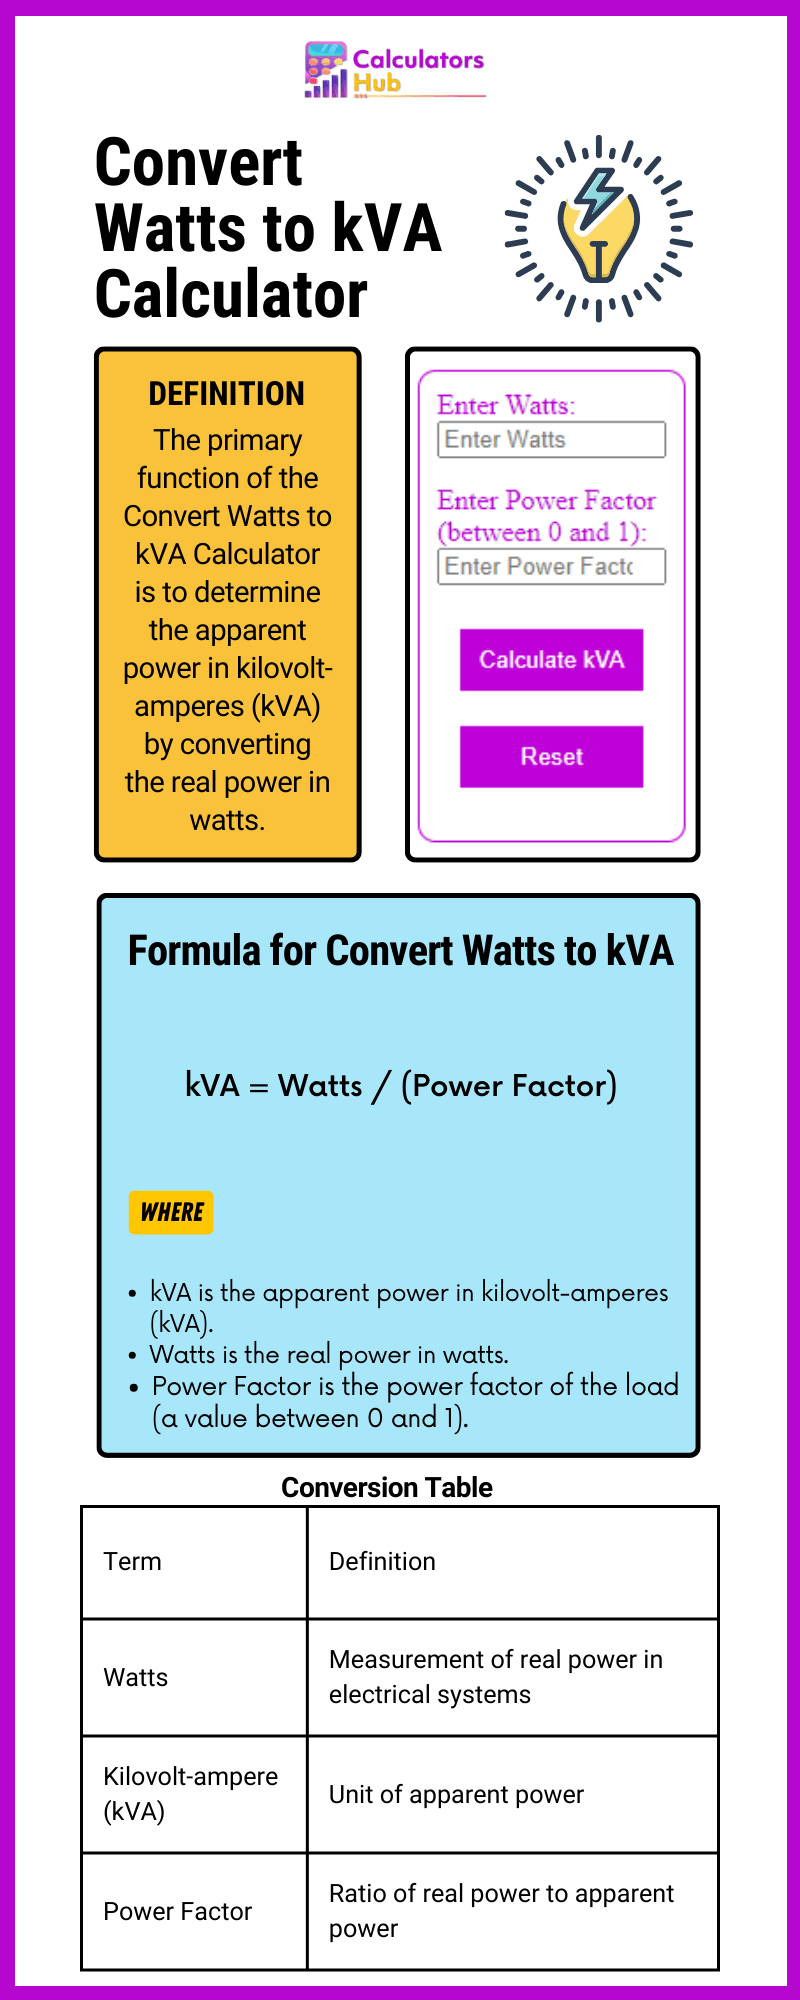 Convert Watts to kVA Calculator